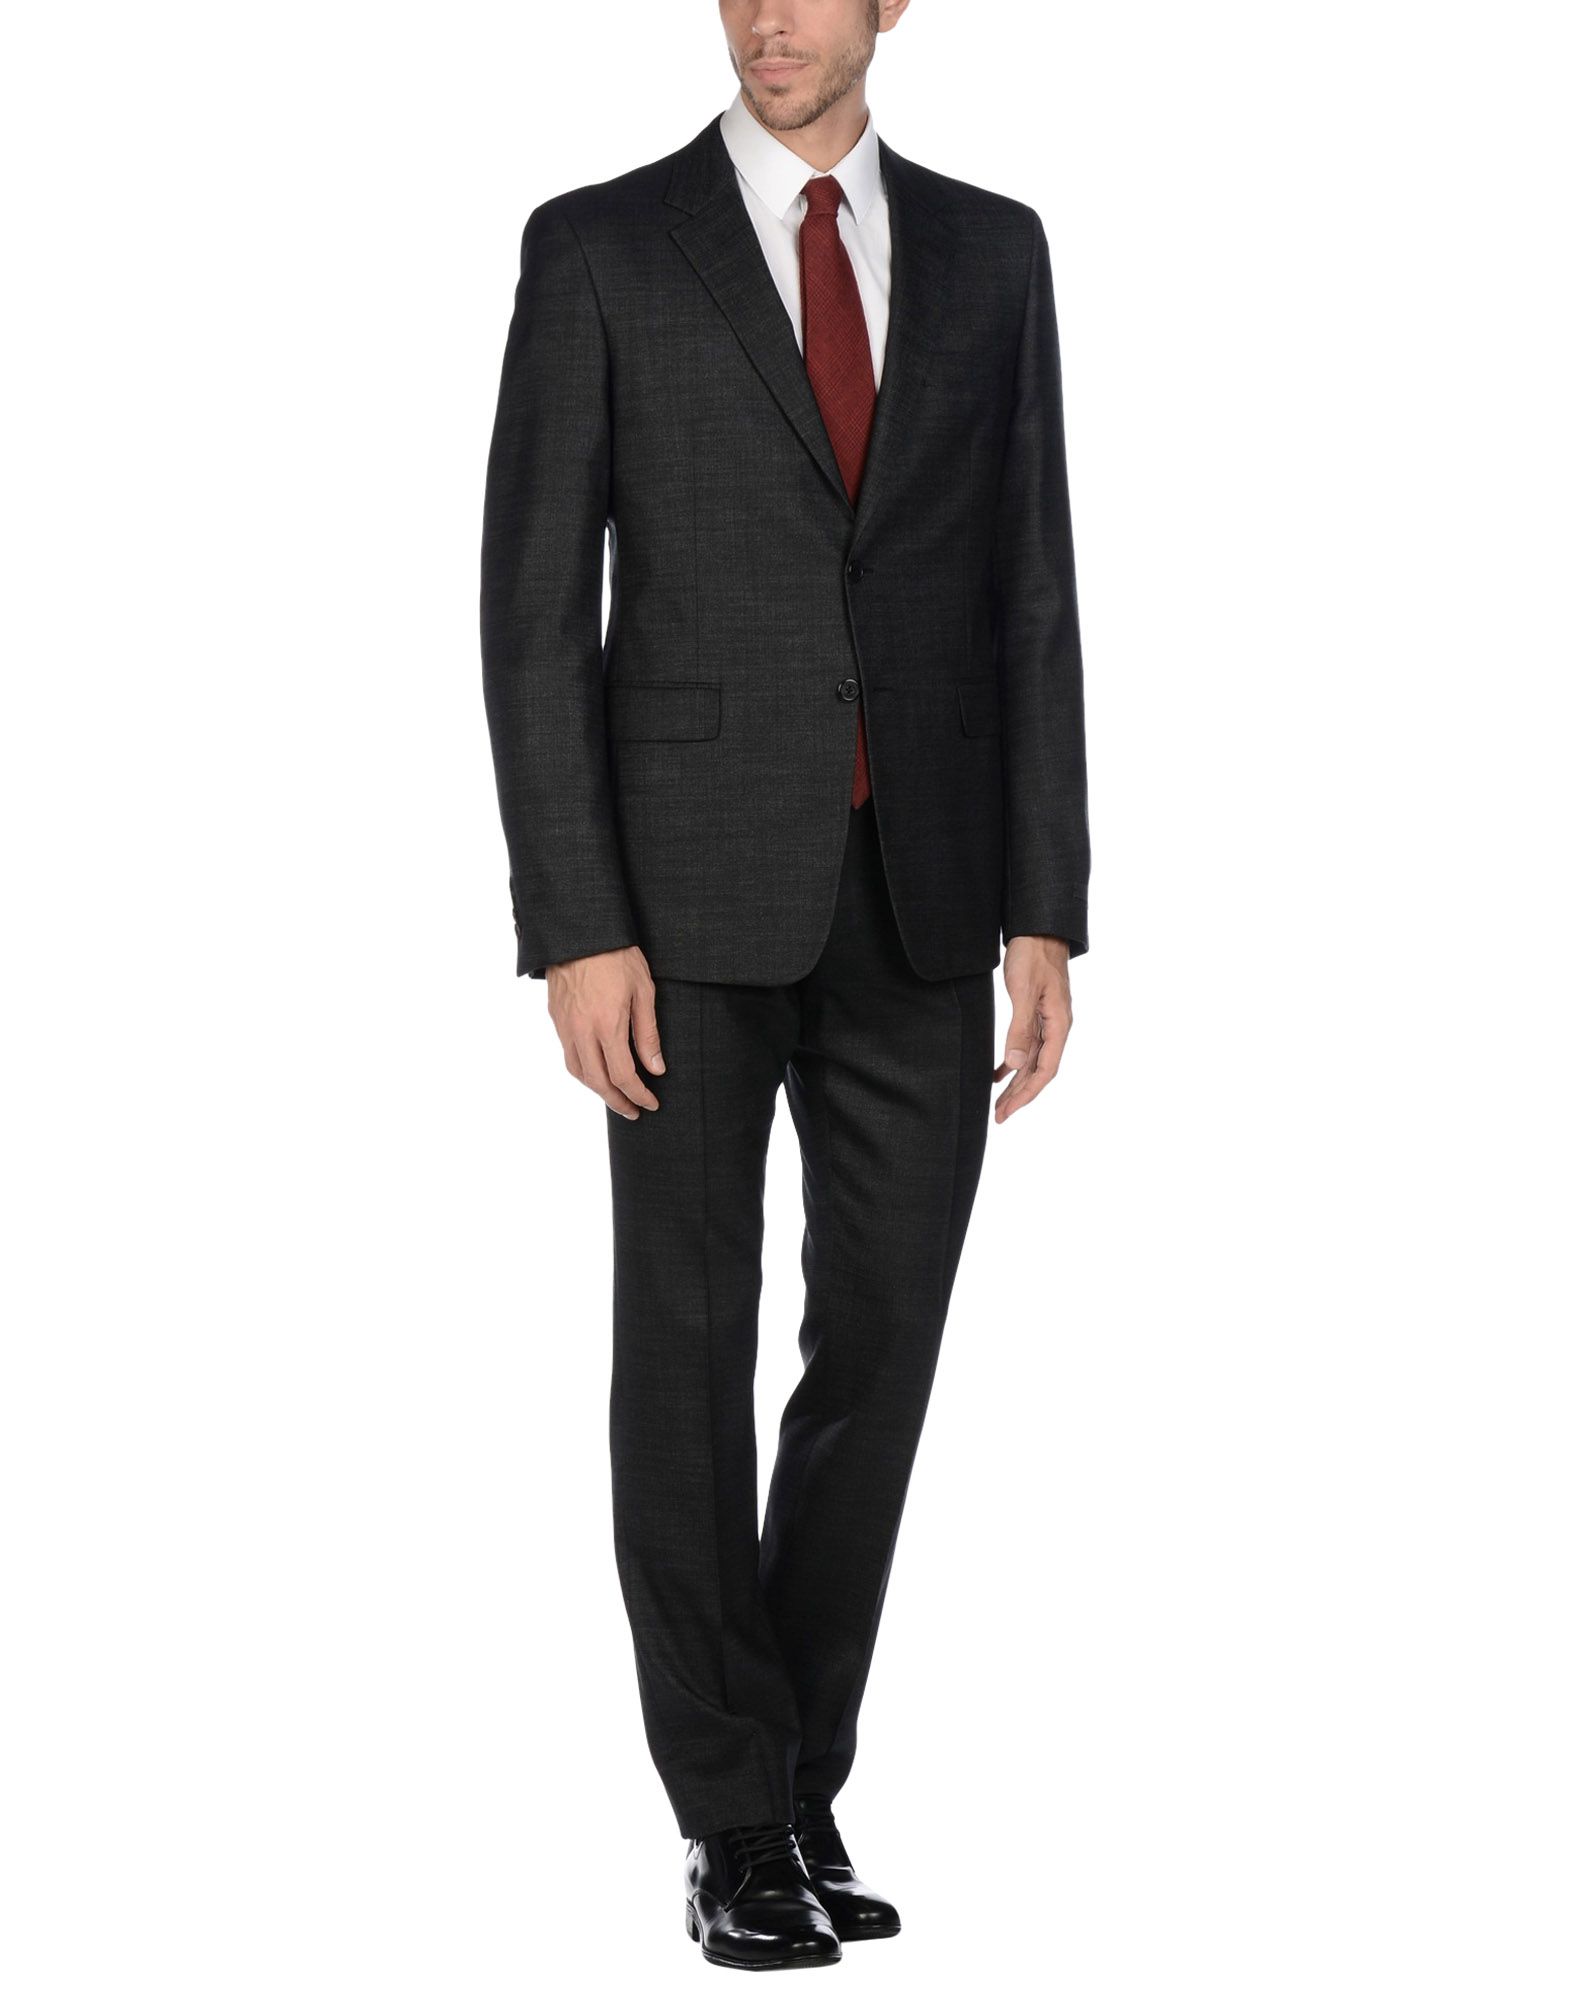 高級品市場 yさん専用 プラダ スーツ PRADA メンズスーツ ブラック50R 